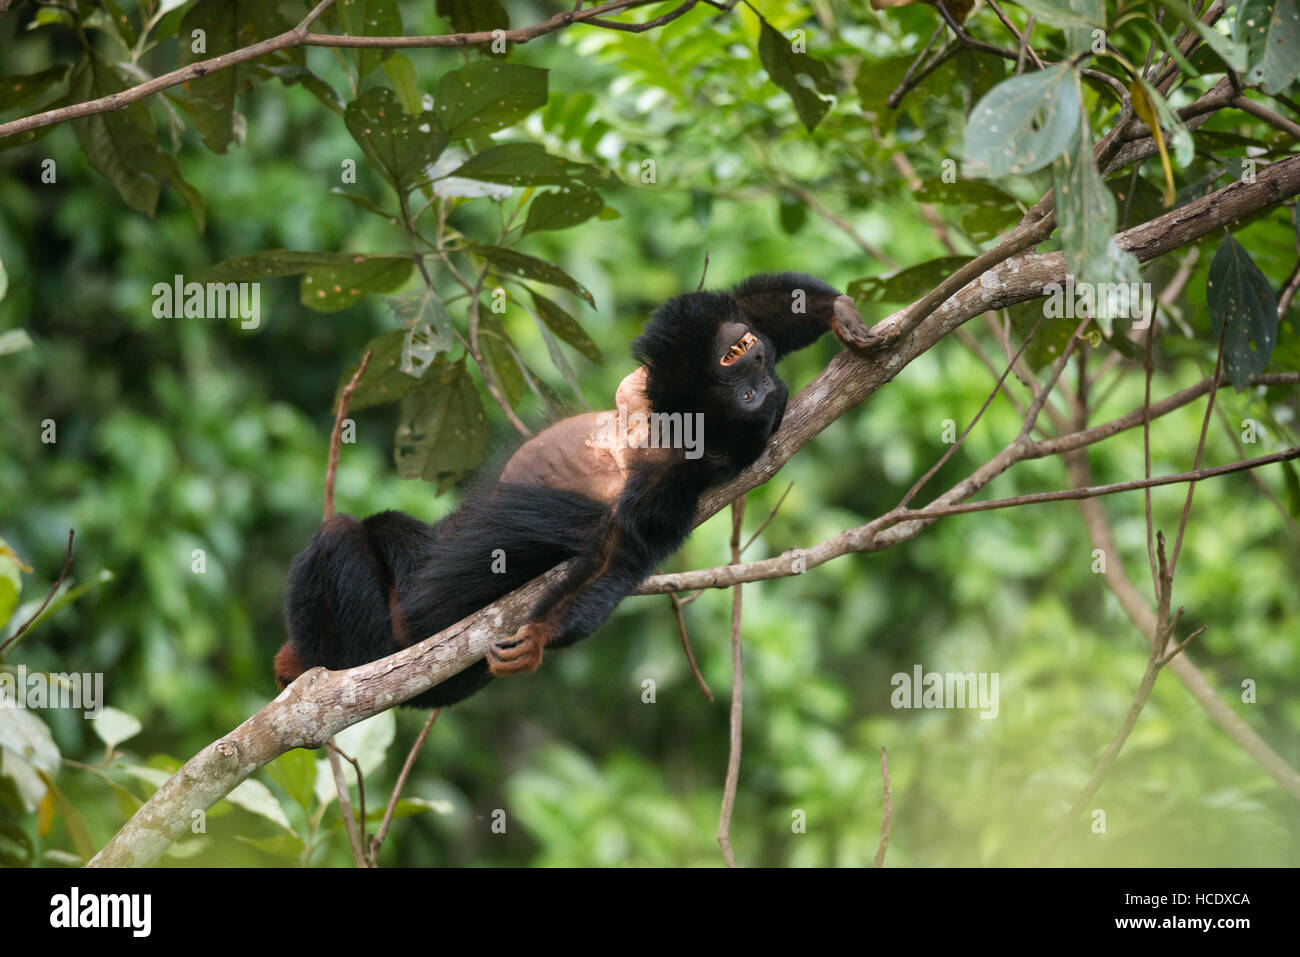 Un vulnerable mono aullador de manos rojas (Acouatta belzebul) de la selva amazónica Foto de stock